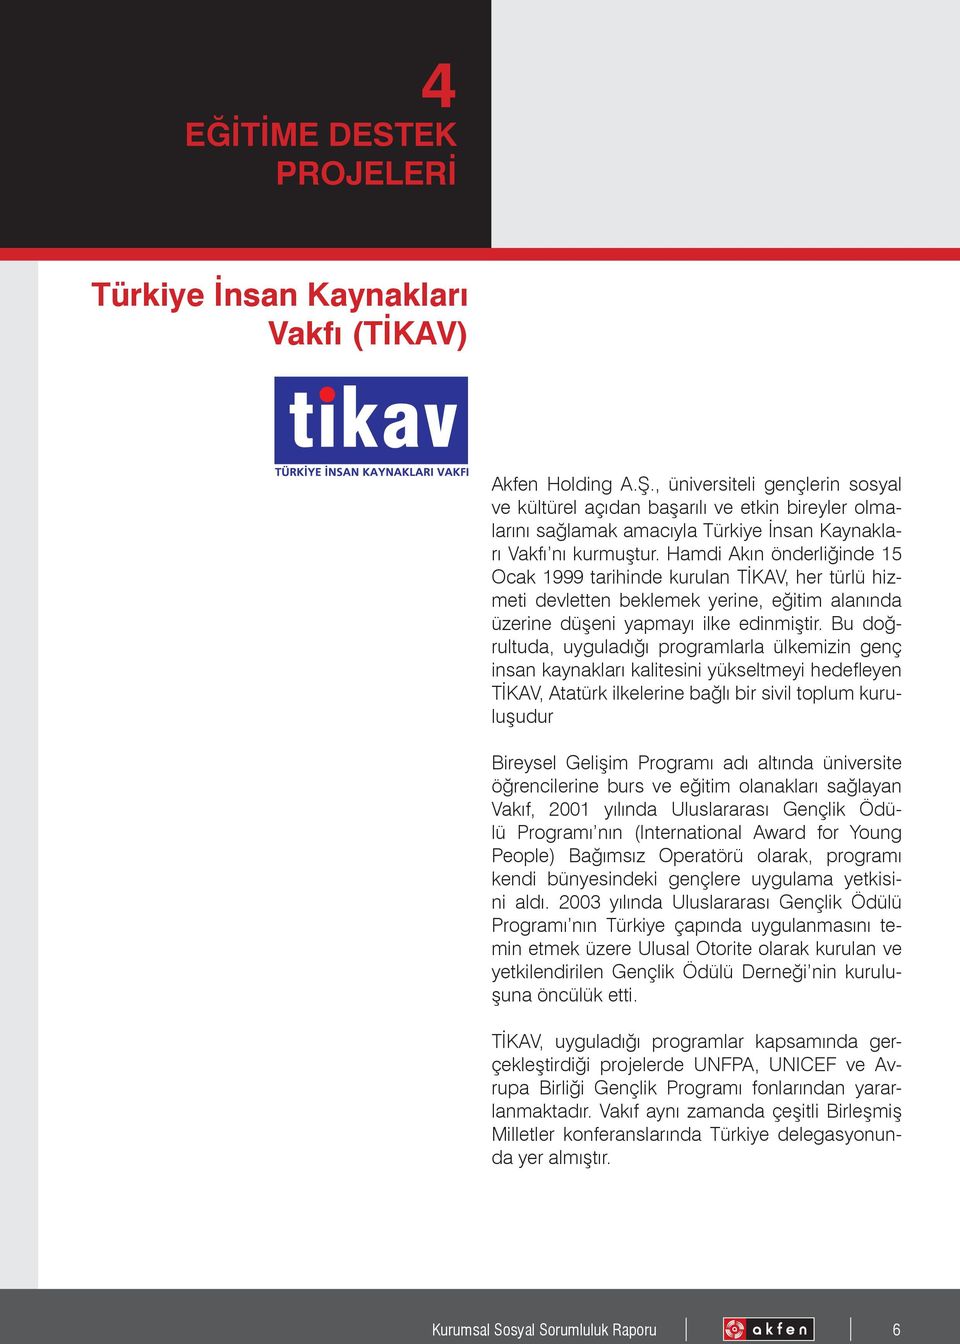 Hamdi Akın önderliğinde 15 Ocak 1999 tarihinde kurulan TİKAV, her türlü hizmeti devletten beklemek yerine, eğitim alanında üzerine düşeni yapmayı ilke edinmiştir.